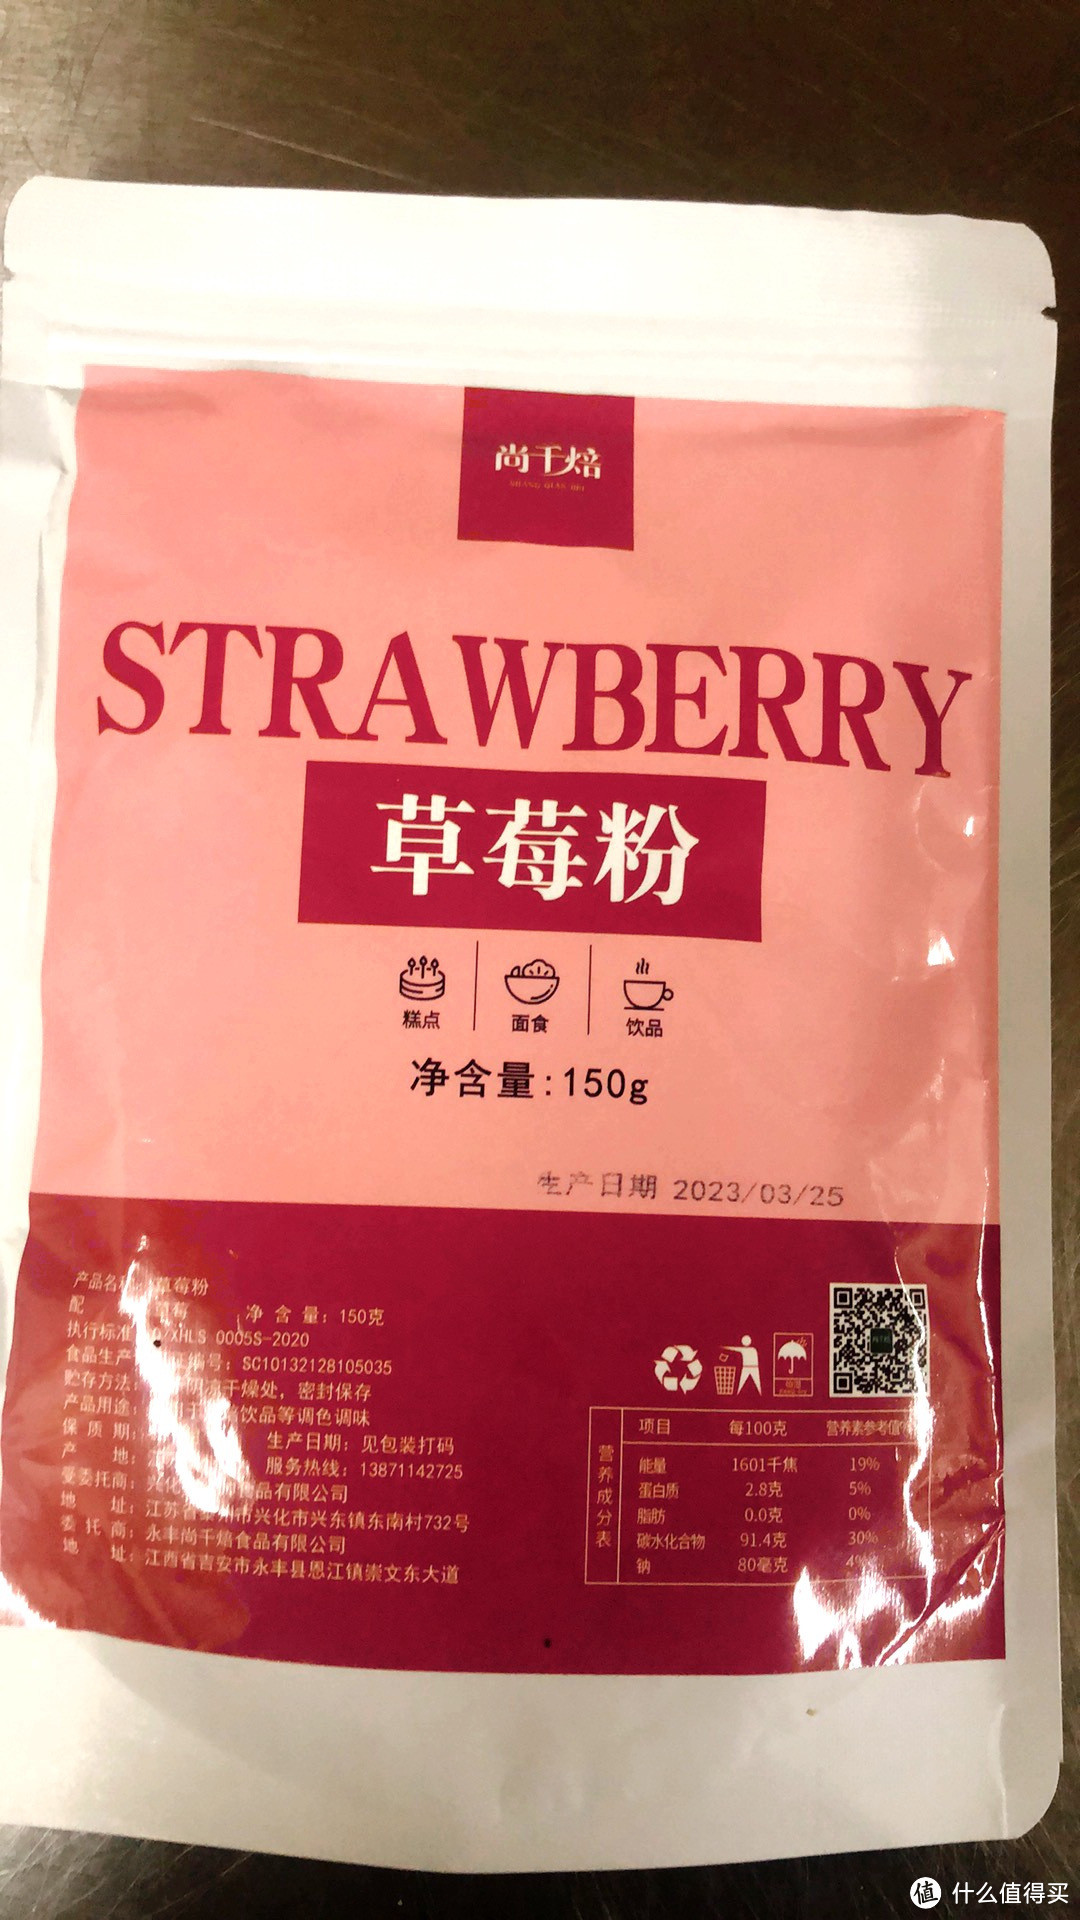 特别喜欢喝的这款草莓粉